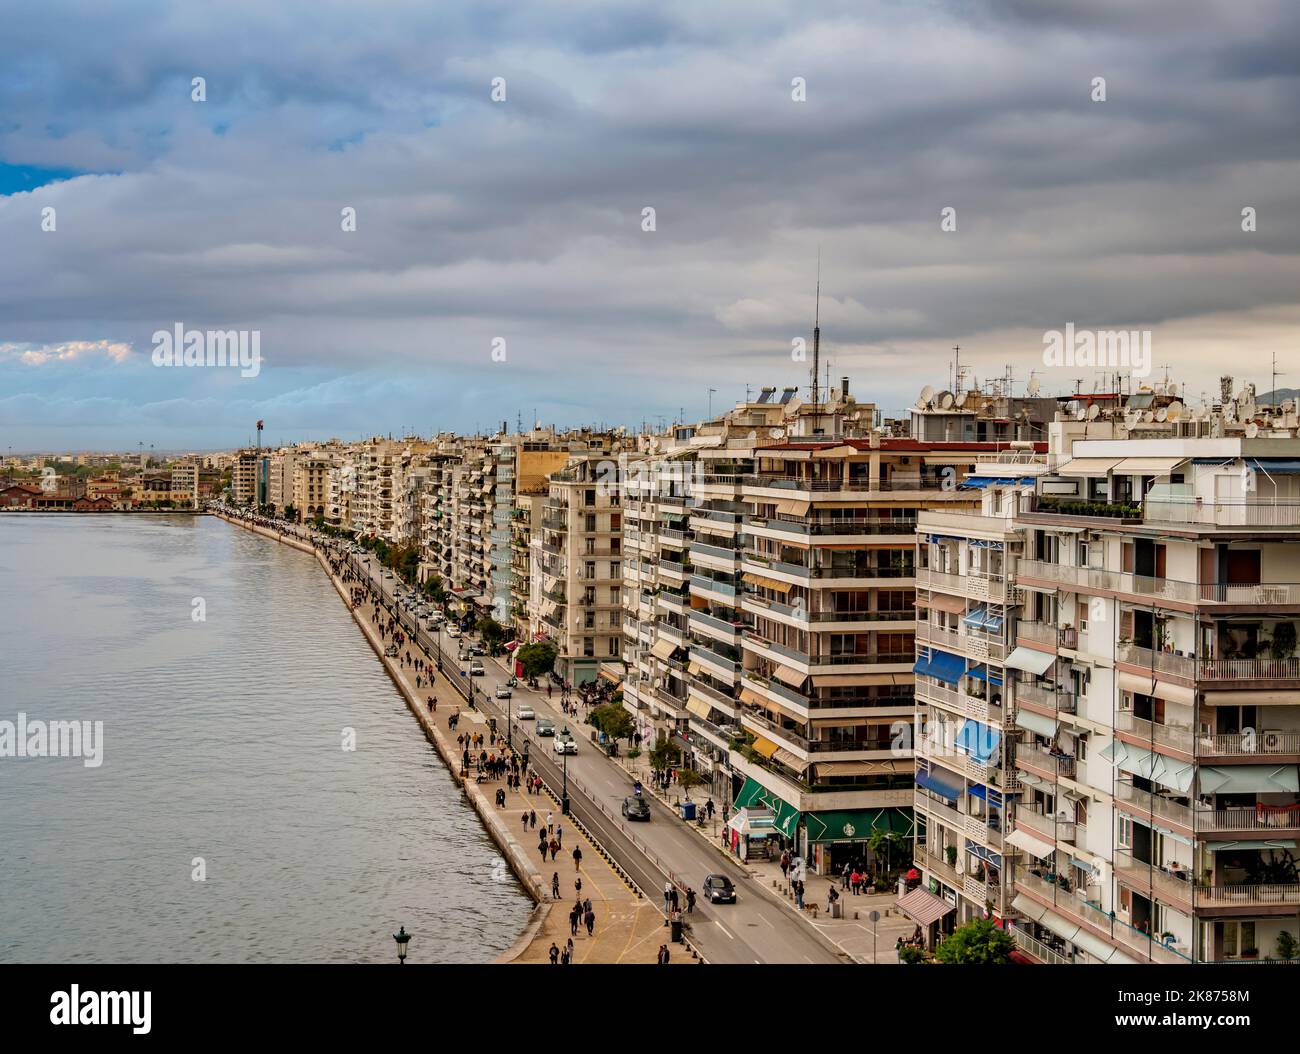 Am Wasser, erhöhte Aussicht, Thessaloniki, Zentralmakedonien, Griechenland, Europa Stockfoto